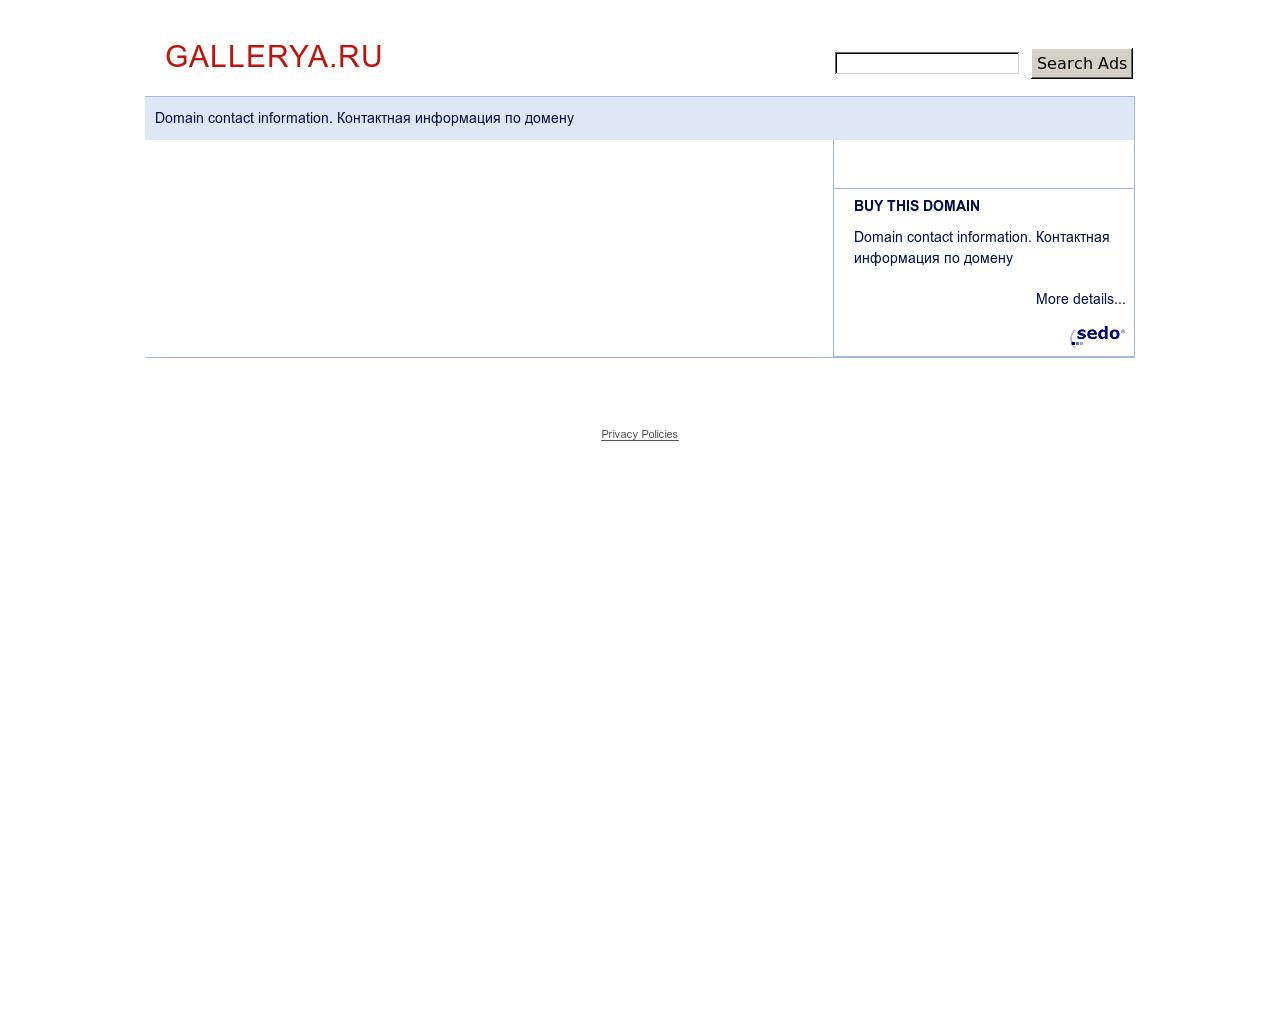 Изображение сайта gallerya.ru в разрешении 1280x1024